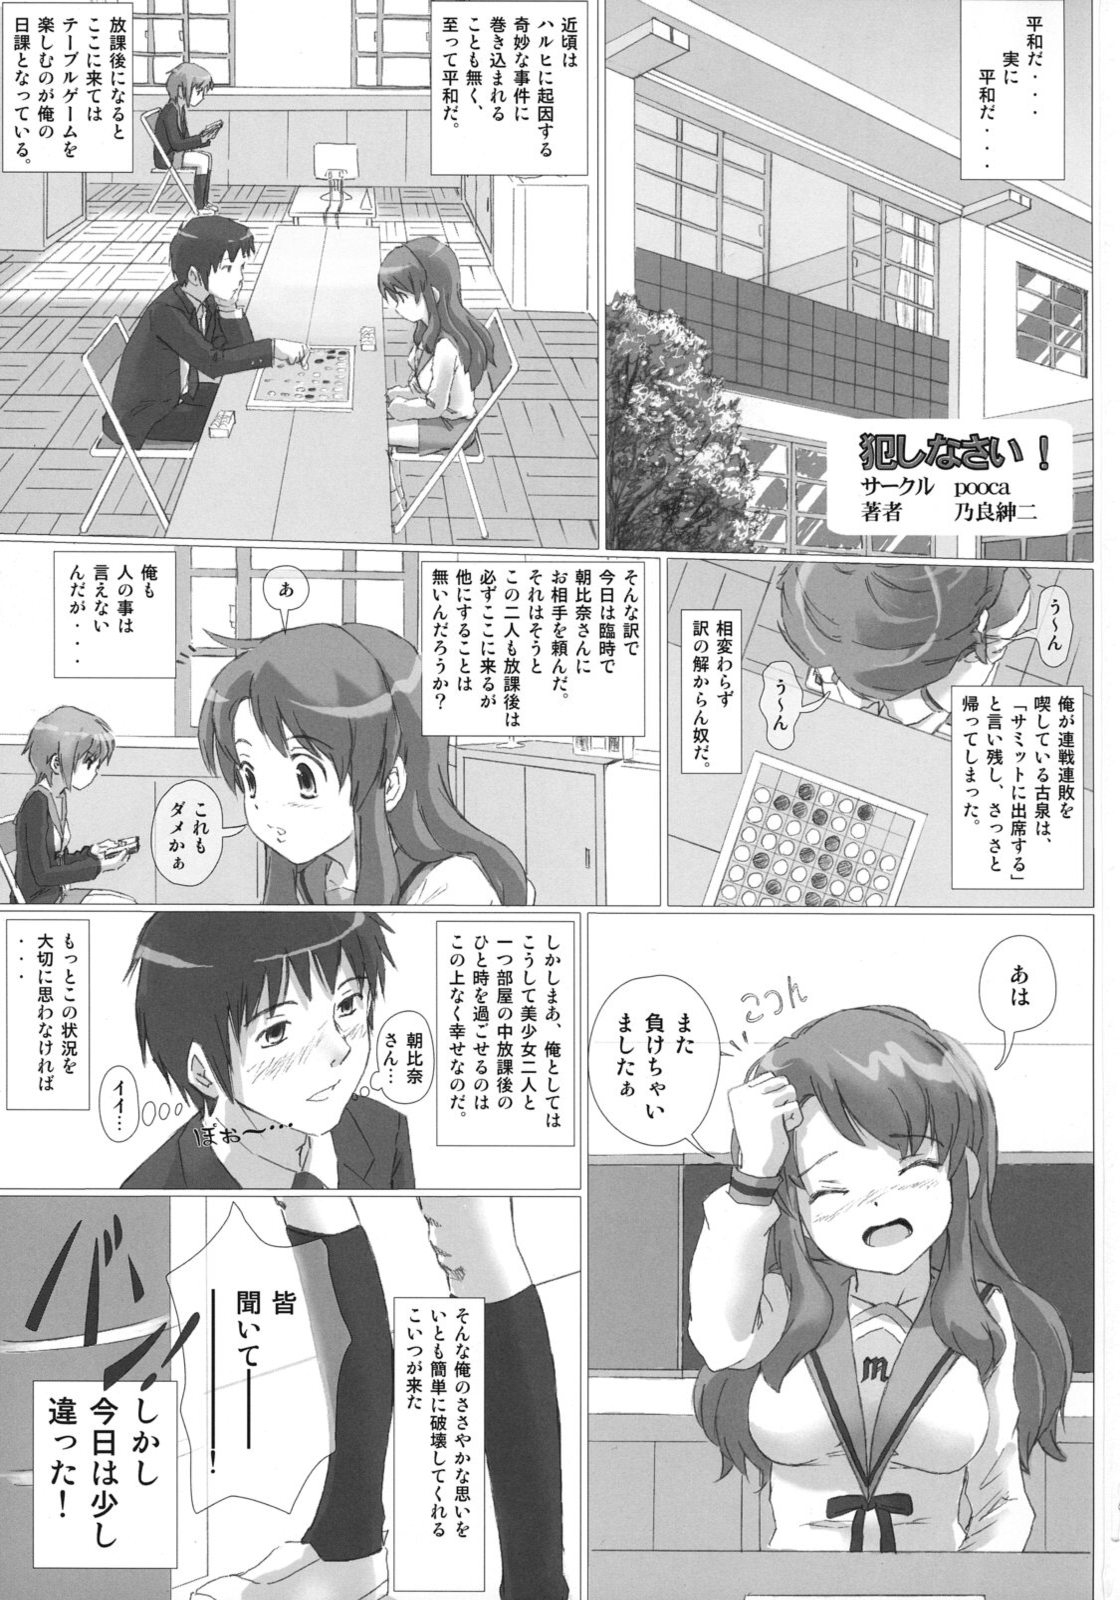 [pooca (Nora Shinji)] Okashi nasai! (The Melancholy of Haruhi Suzumiya) page 2 full